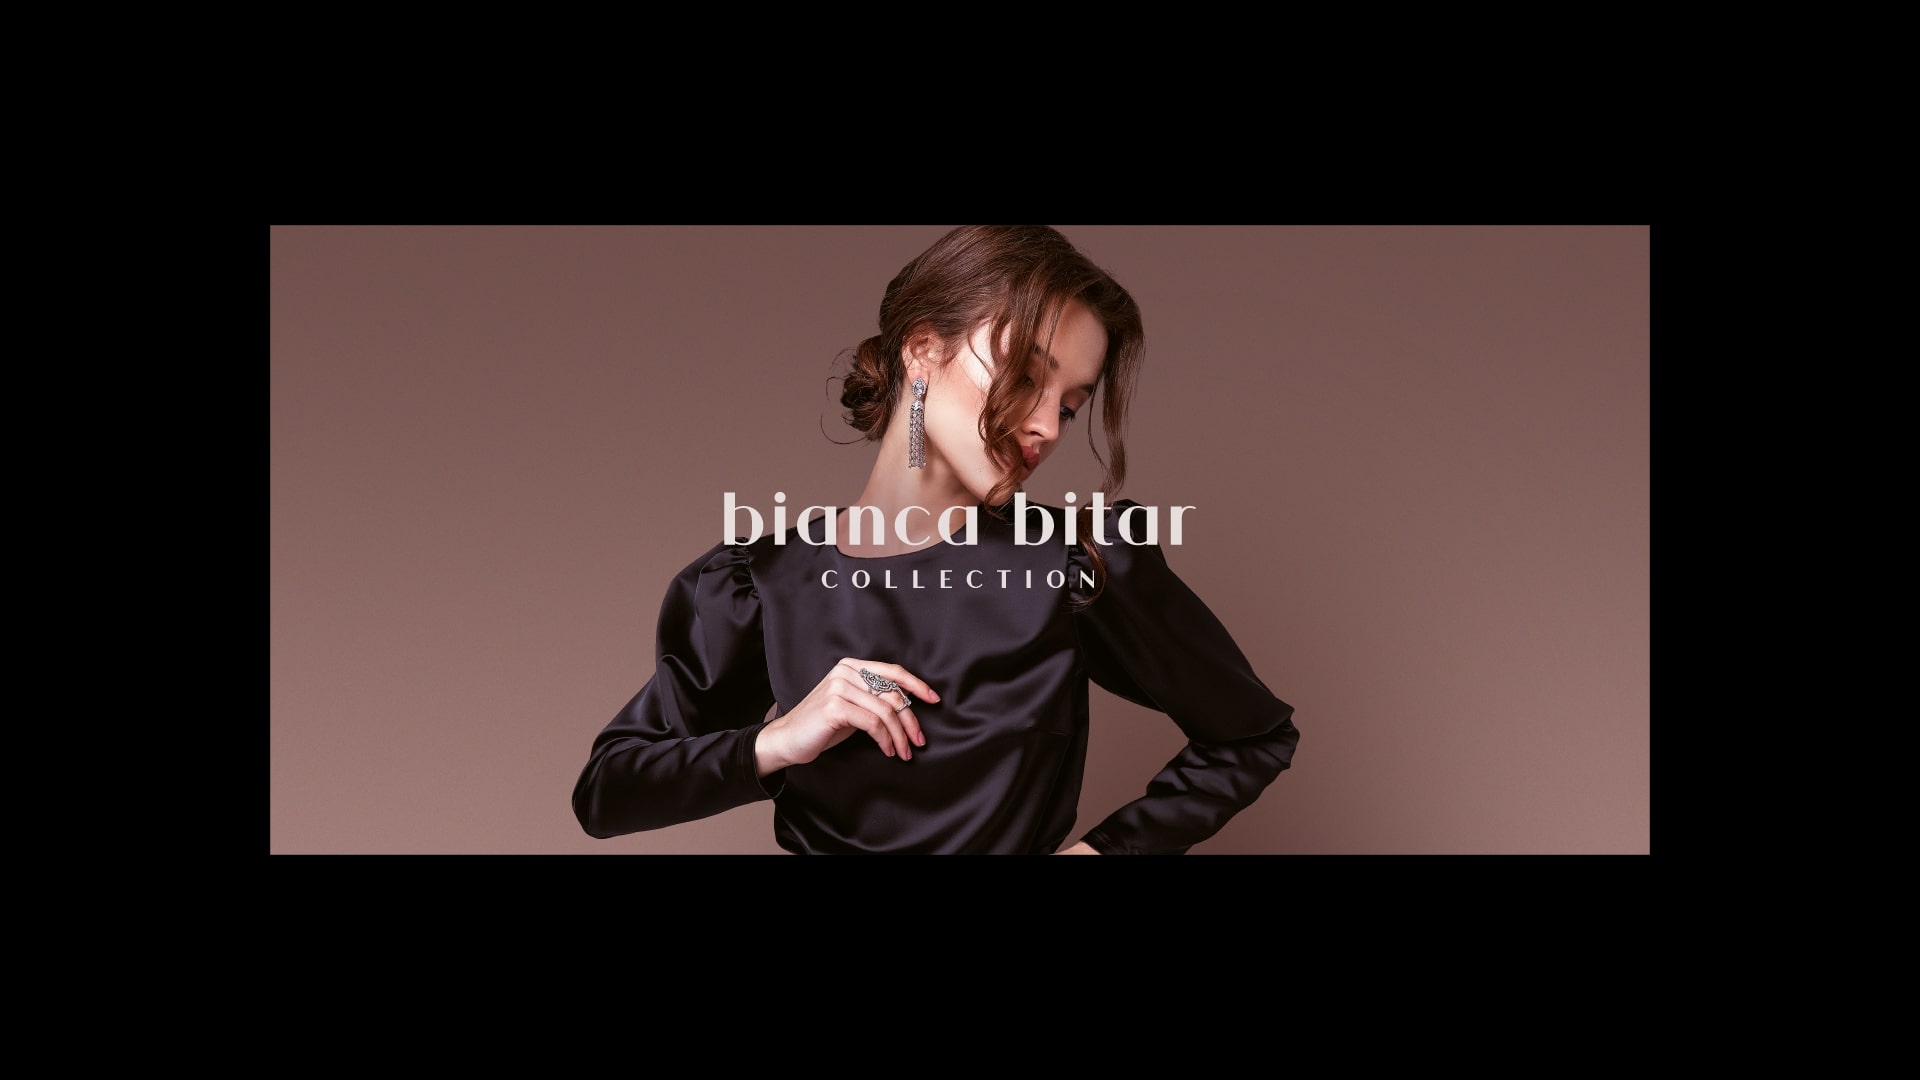 Bianca Bitar Collection Brand and Visual Identity by Aero Comunicação